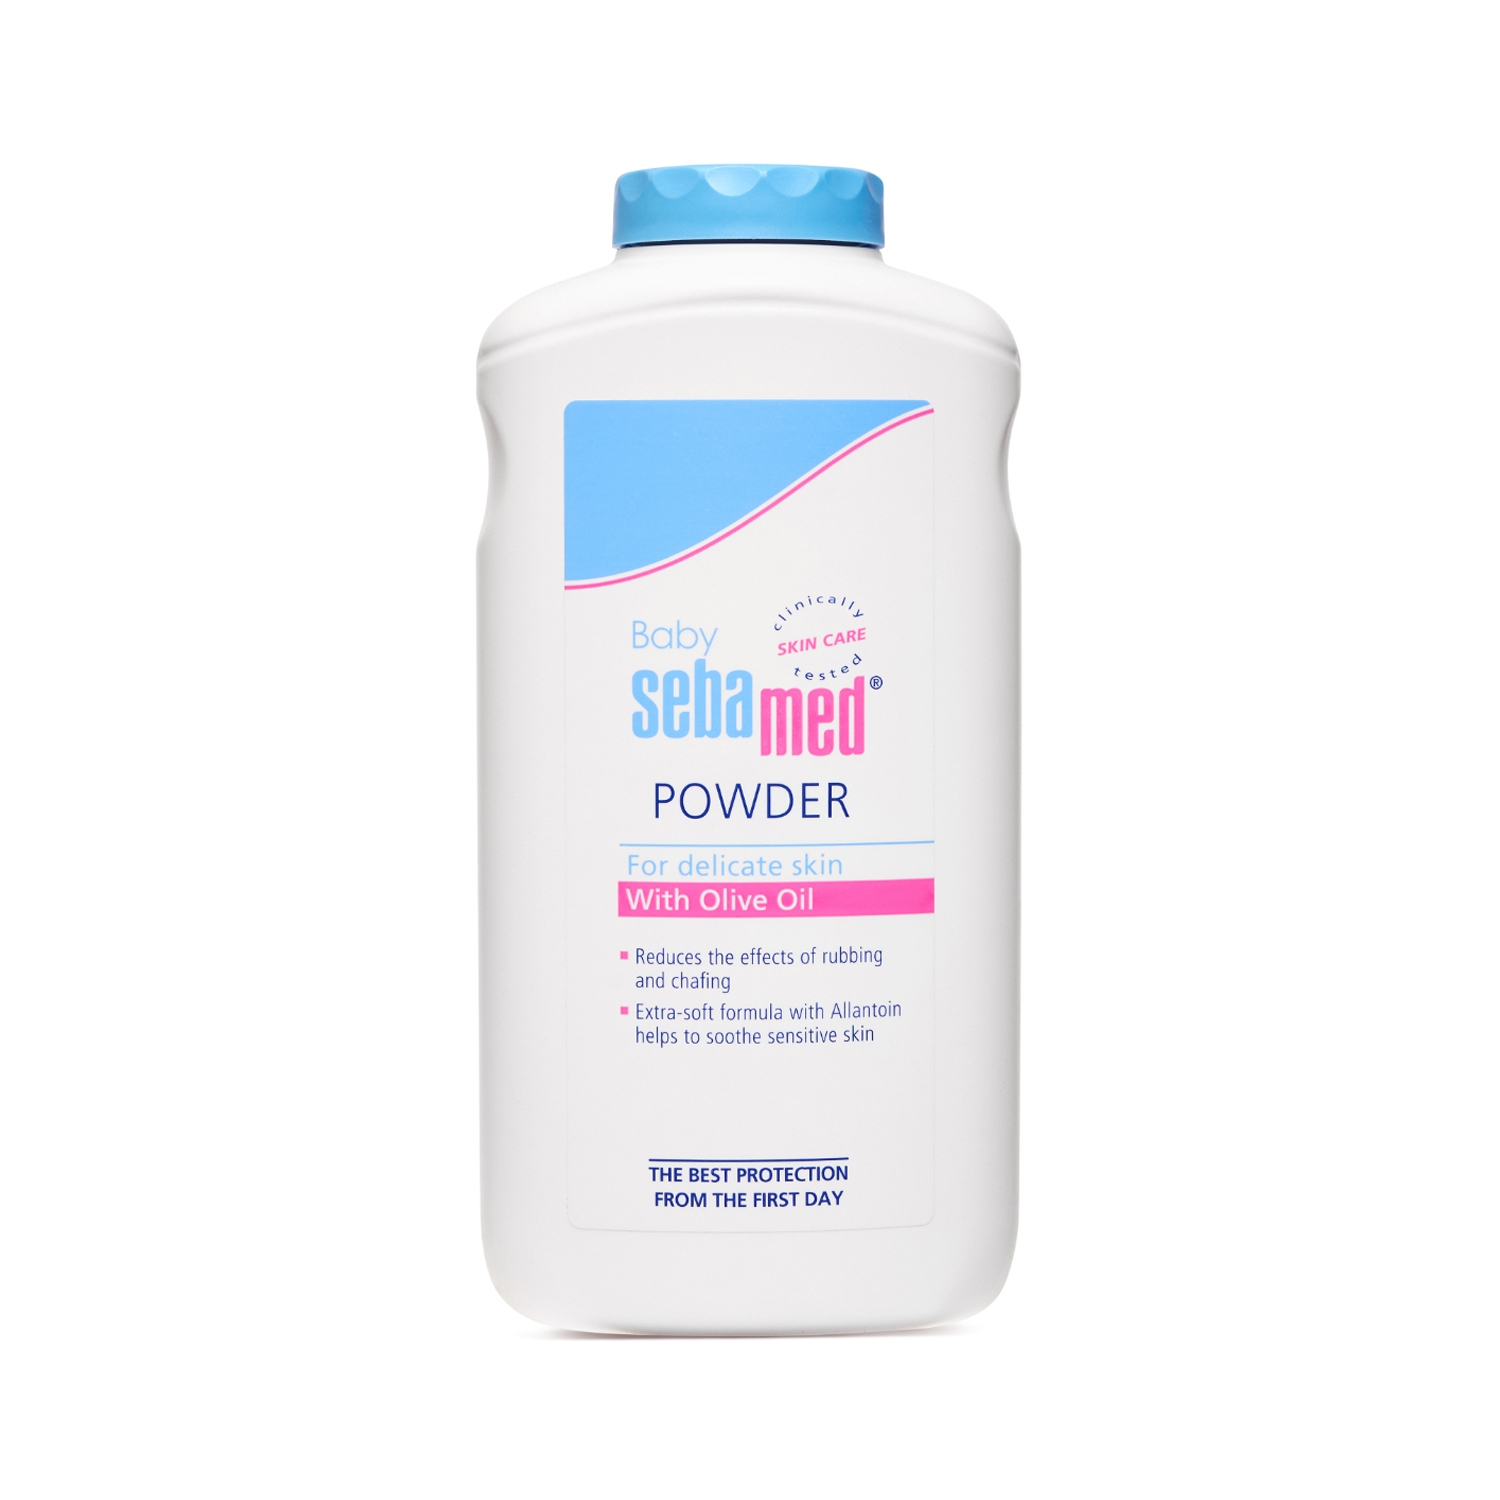 Sebamed | Sebamed Baby Powder (200g)